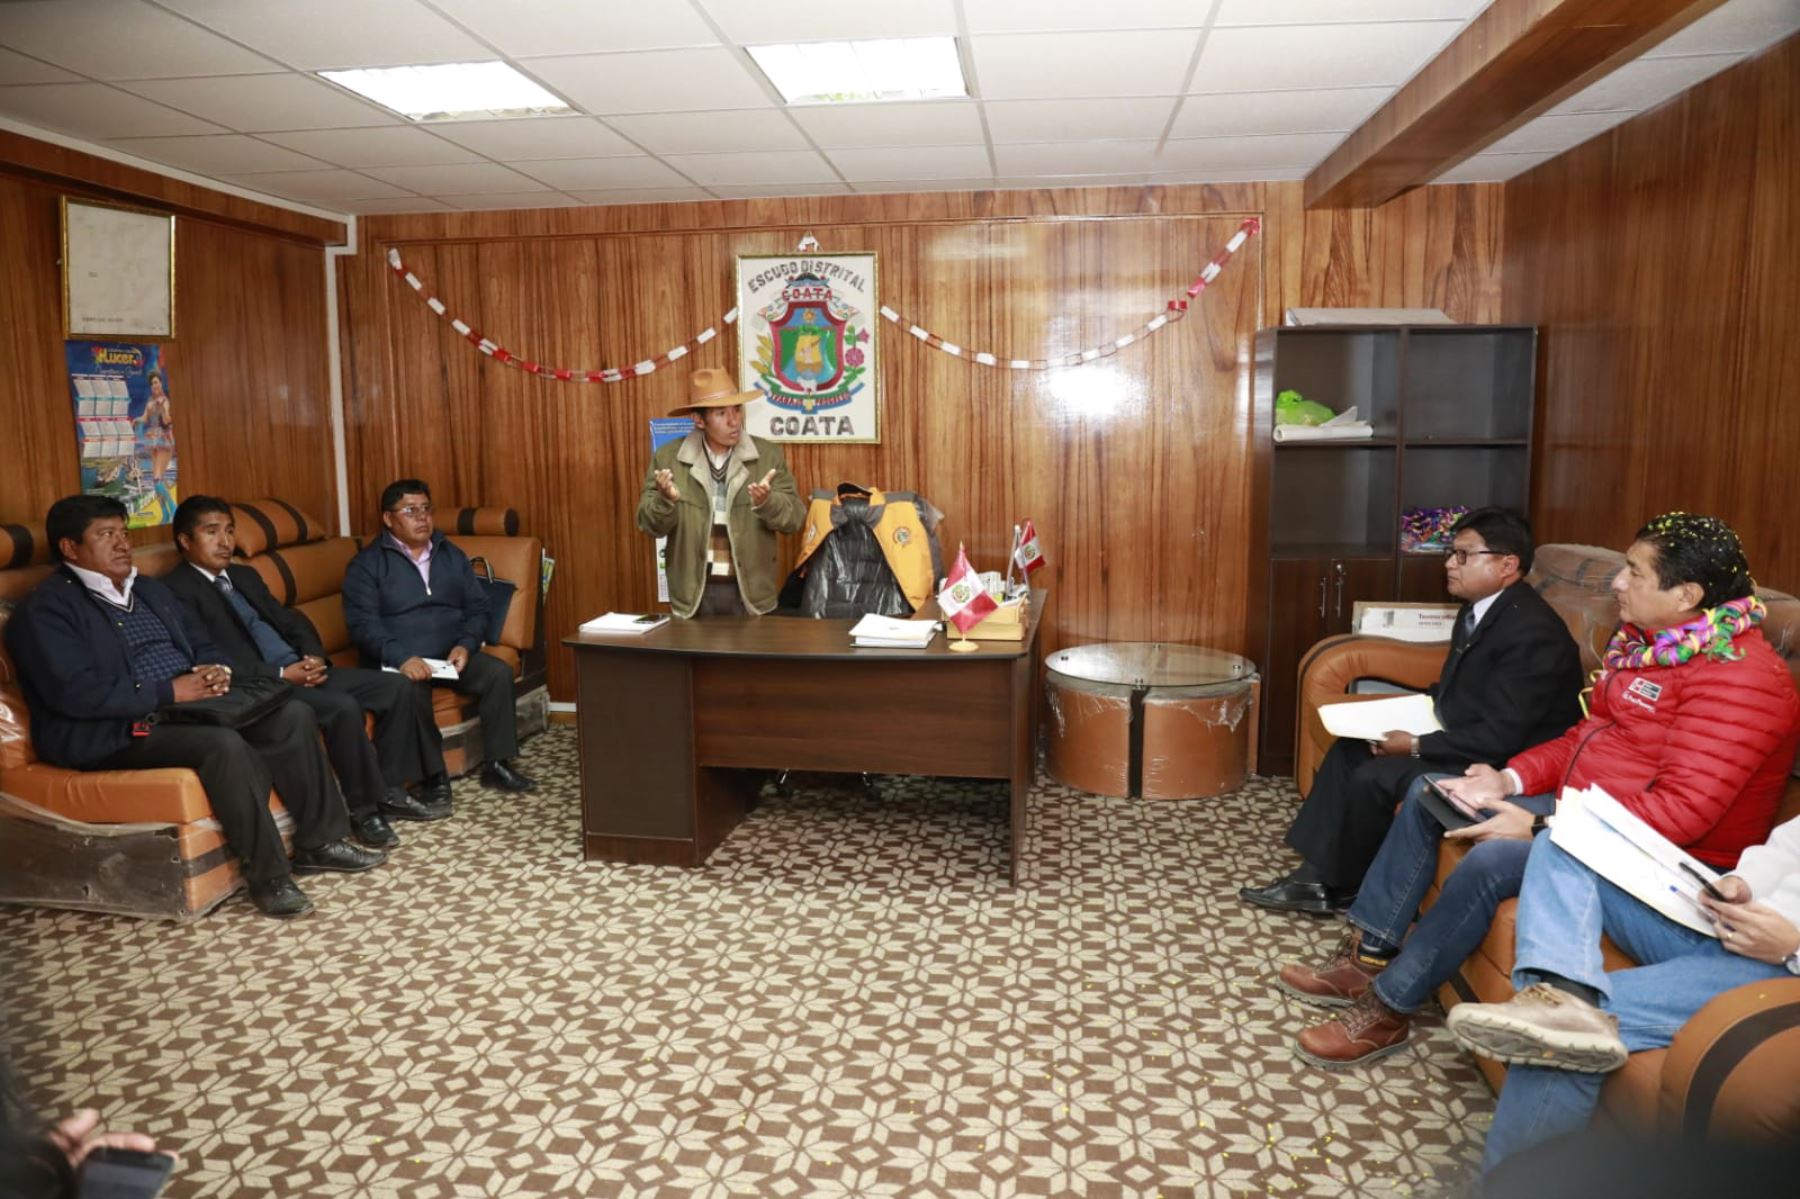 El ministro de Vivienda, Construcción y Saneamiento, Rodolfo Yáñez, se reunió con los alcaldes de los distritos de Coata, Huata, Capachica y Caracoto y el gobernador regional de Puno.